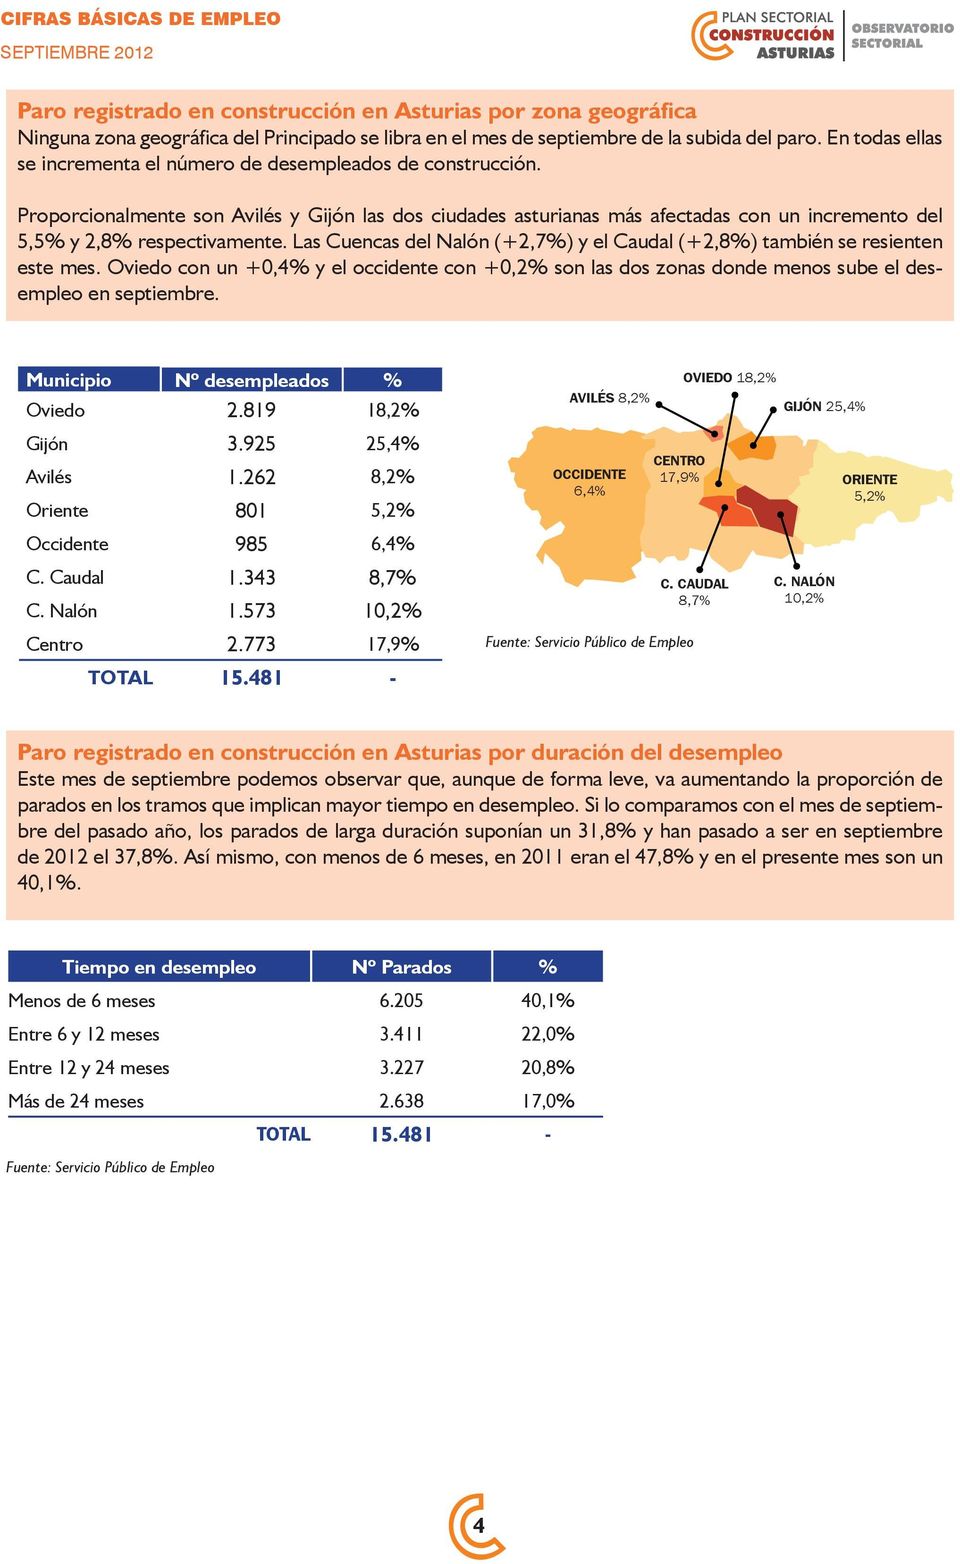 Proporcionalmente son Avilés y Gijón las dos ciudades asturianas más afectadas con un incremento del 5,5% y 2,8% respectivamente.